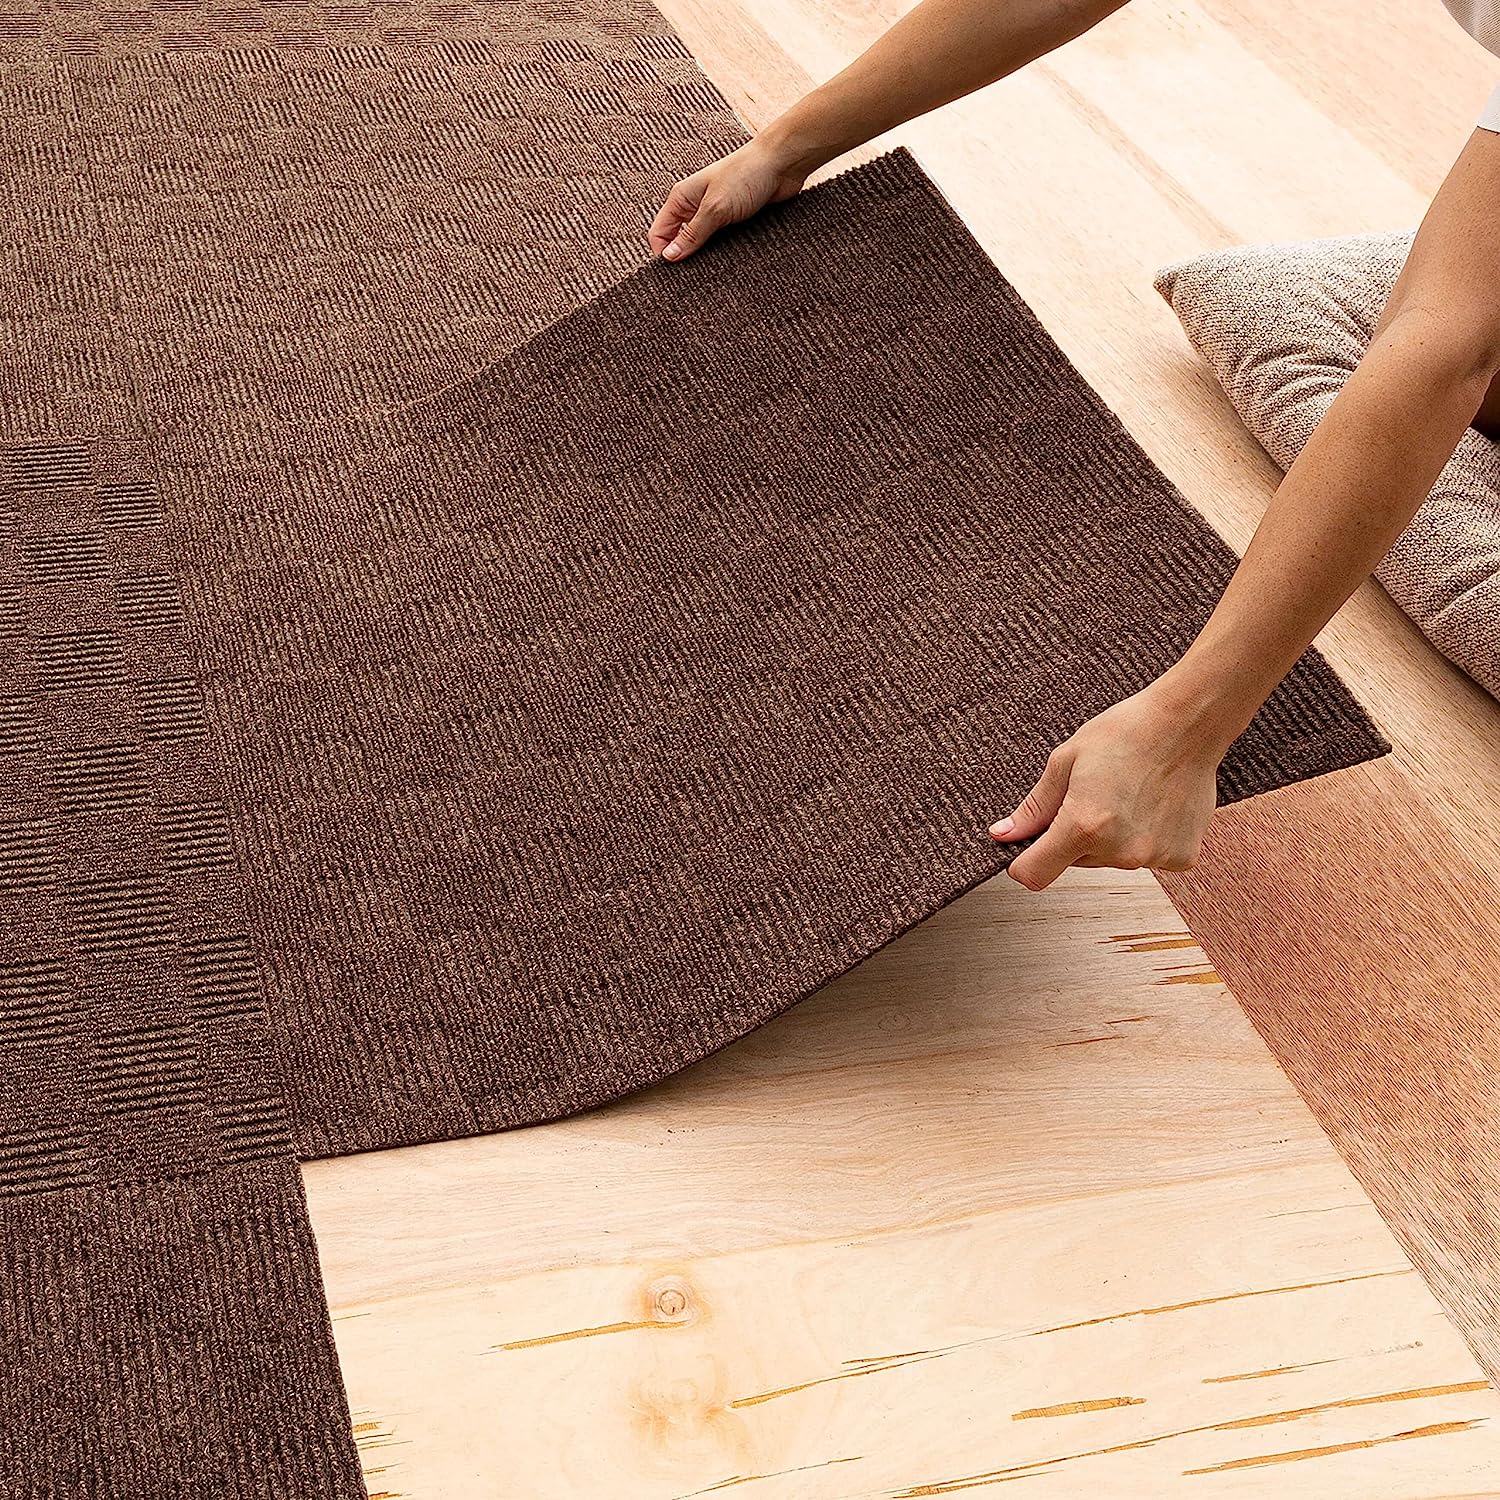 carpet tiles for living room review